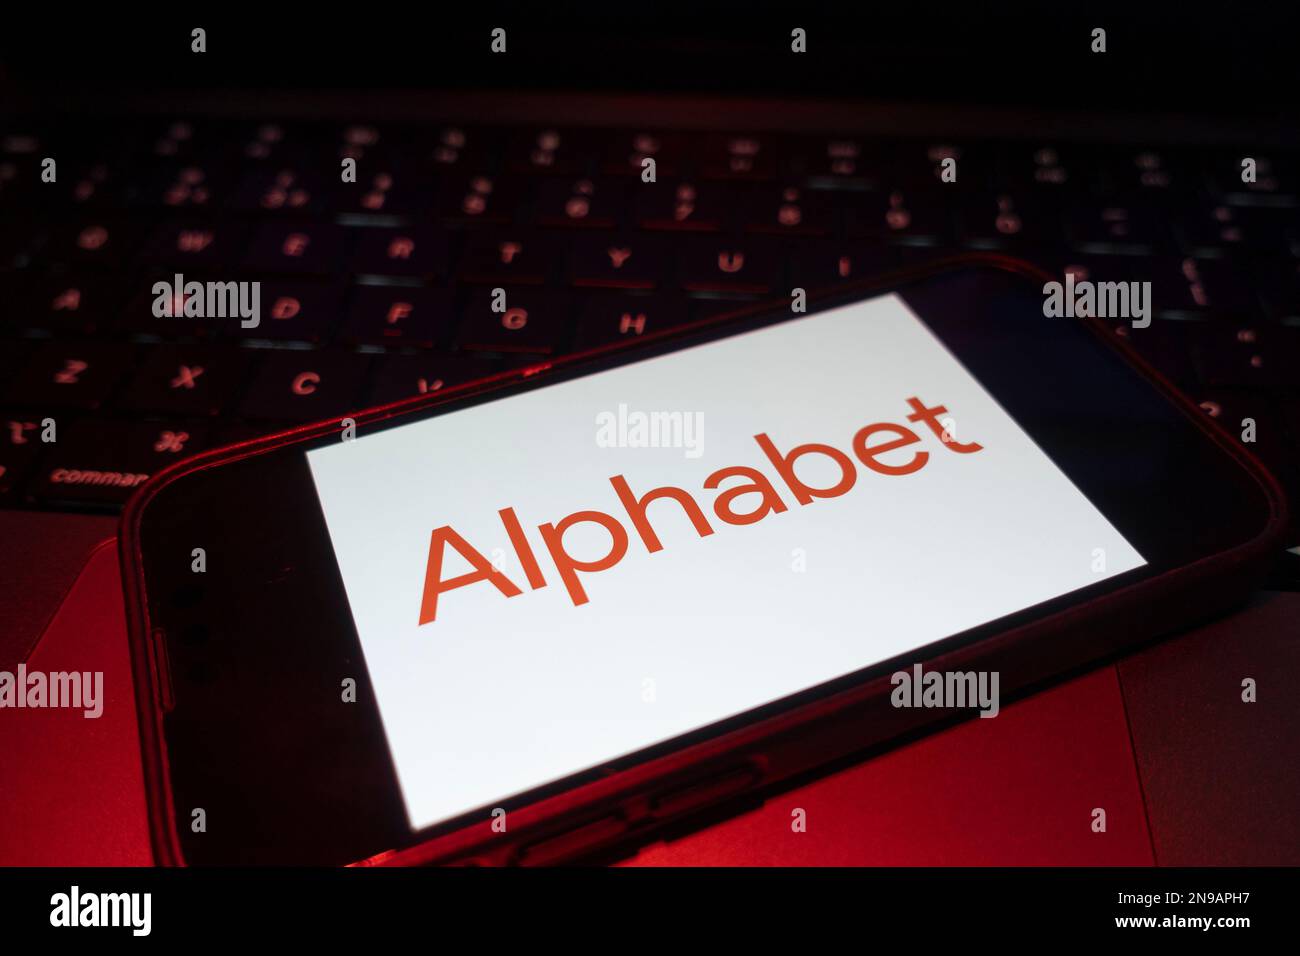 Digitales zusammengesetztes Bild des Google Alphabet-Logos auf dem Bildschirm des Telefons. Stockfoto